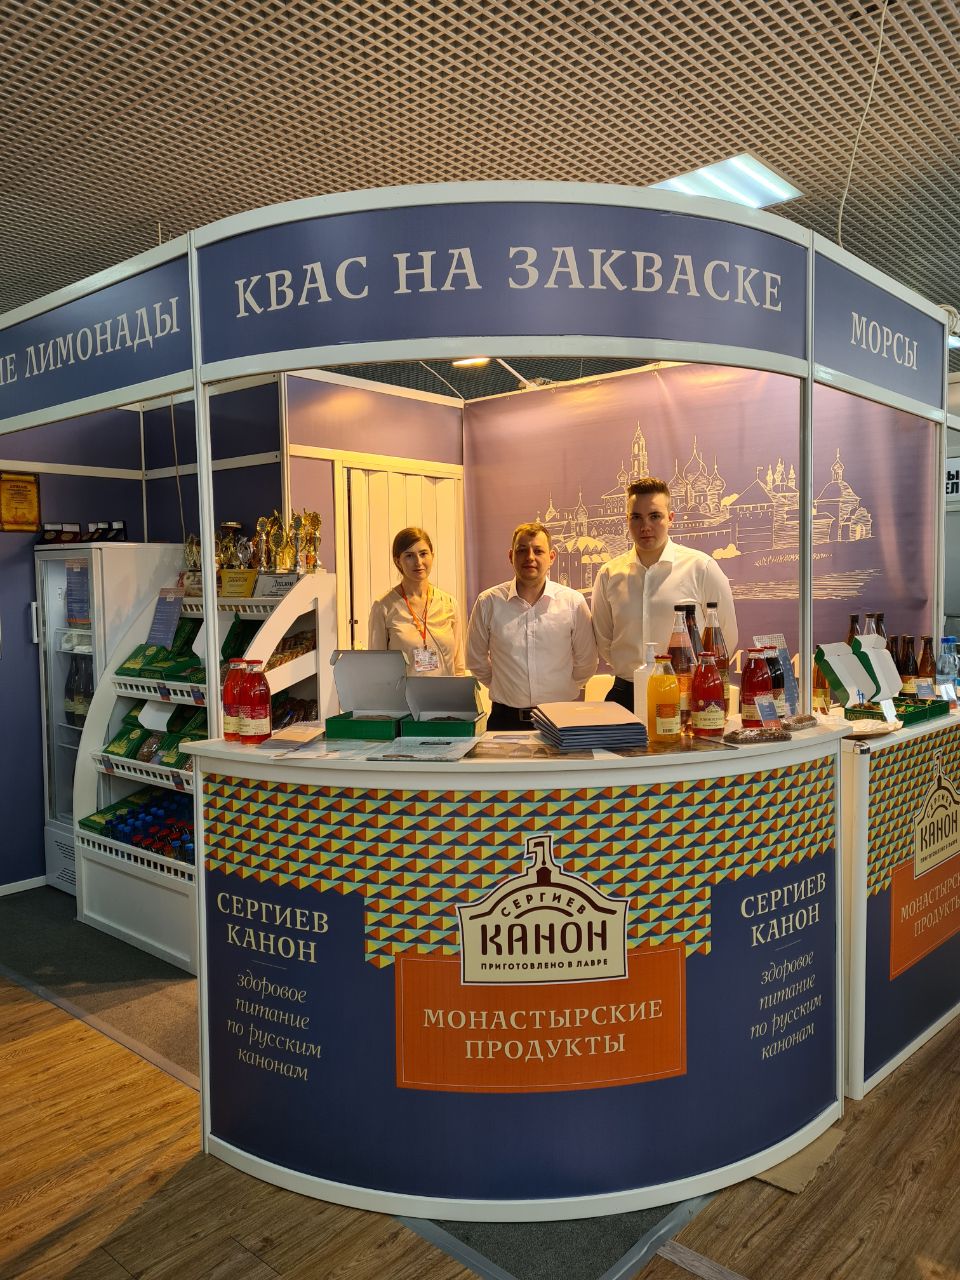 Напитки, произведенные в Сергиевом Посаде, получили награды на международной выставке в Сочи